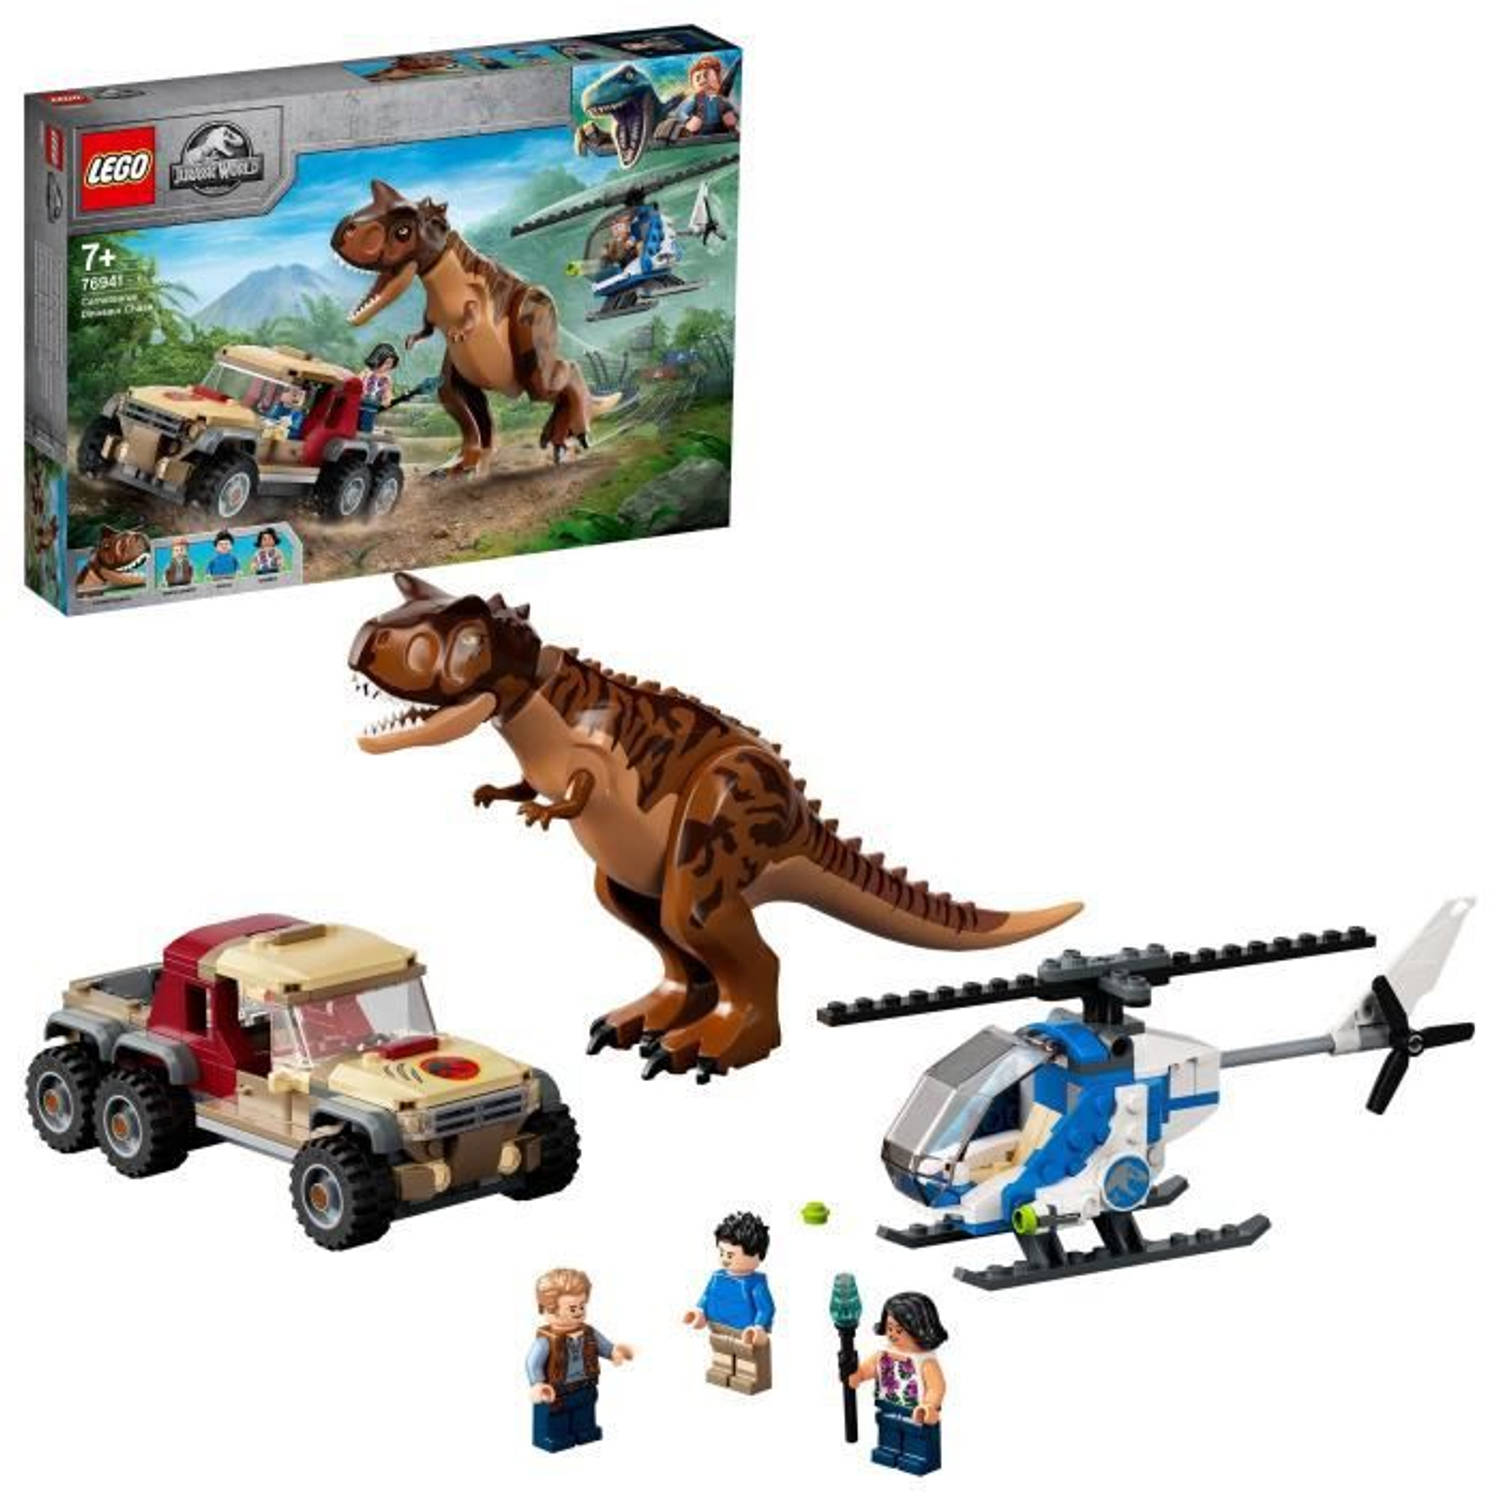 lego-76941-jurassic-world-de-jacht-op-de-carnotaurus-dinosaurus-speelgoedkind-7-jaar-met-helikopter-en-pick-up